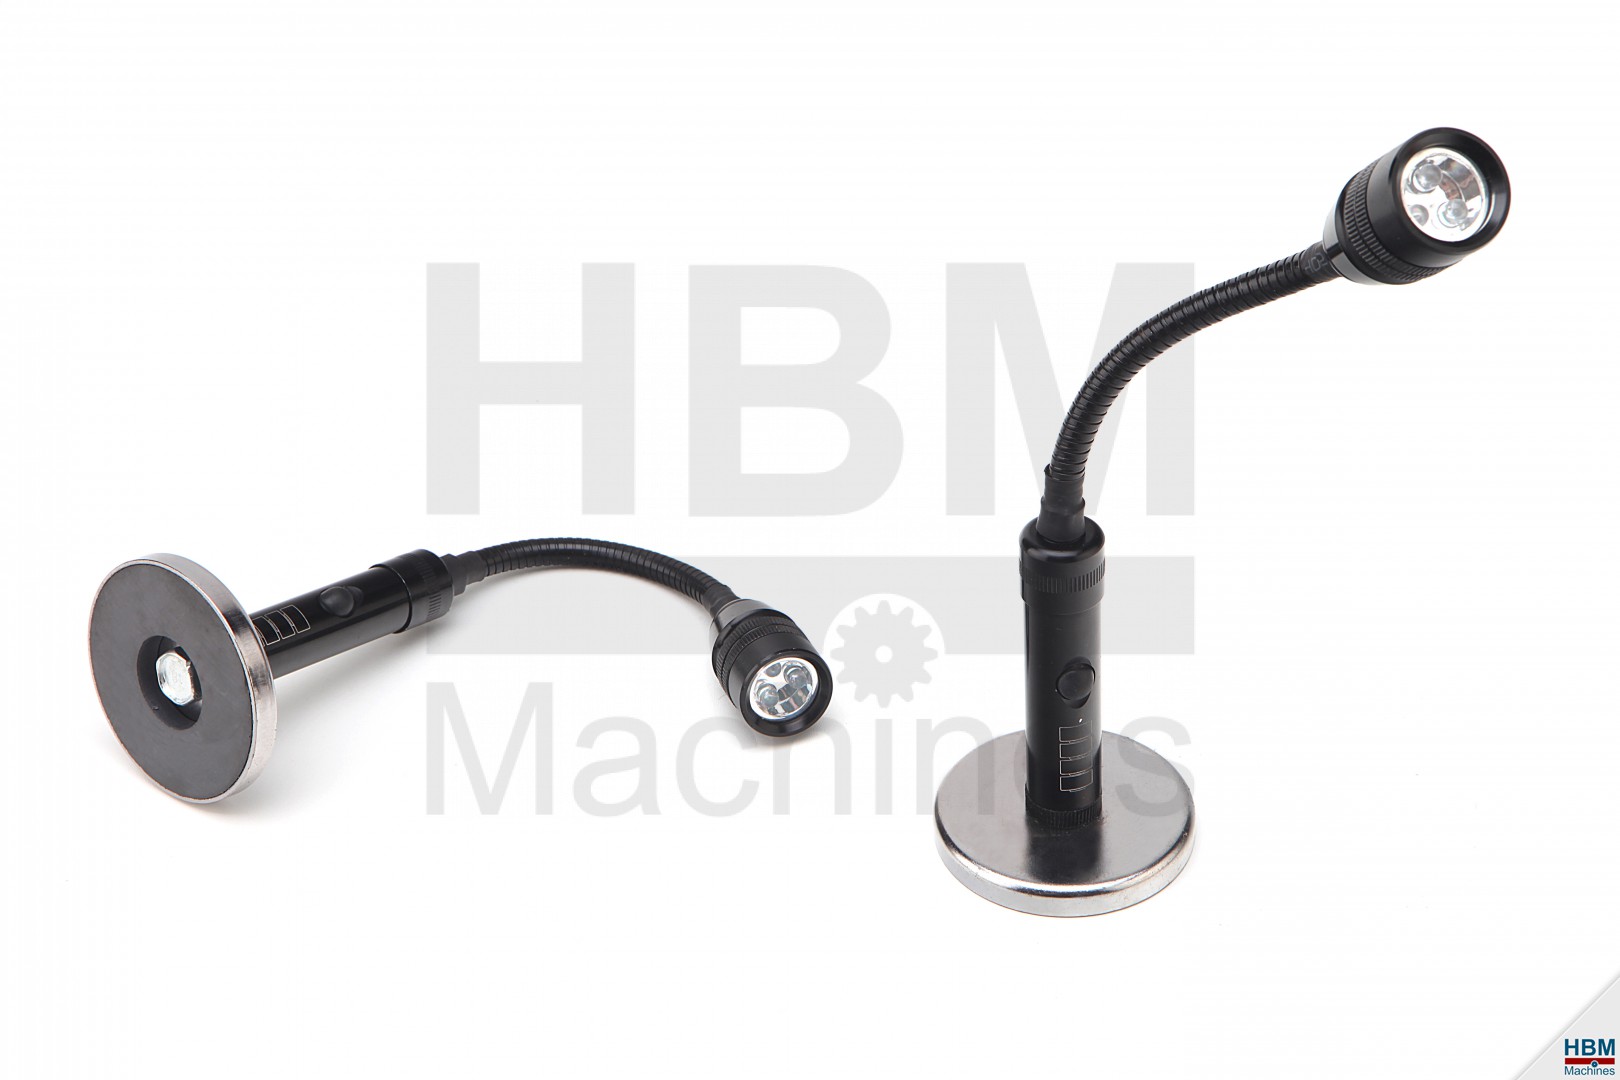 Melancholie Beukende Voorzien HBM LED Lamp op magneet voet | HBM Machines